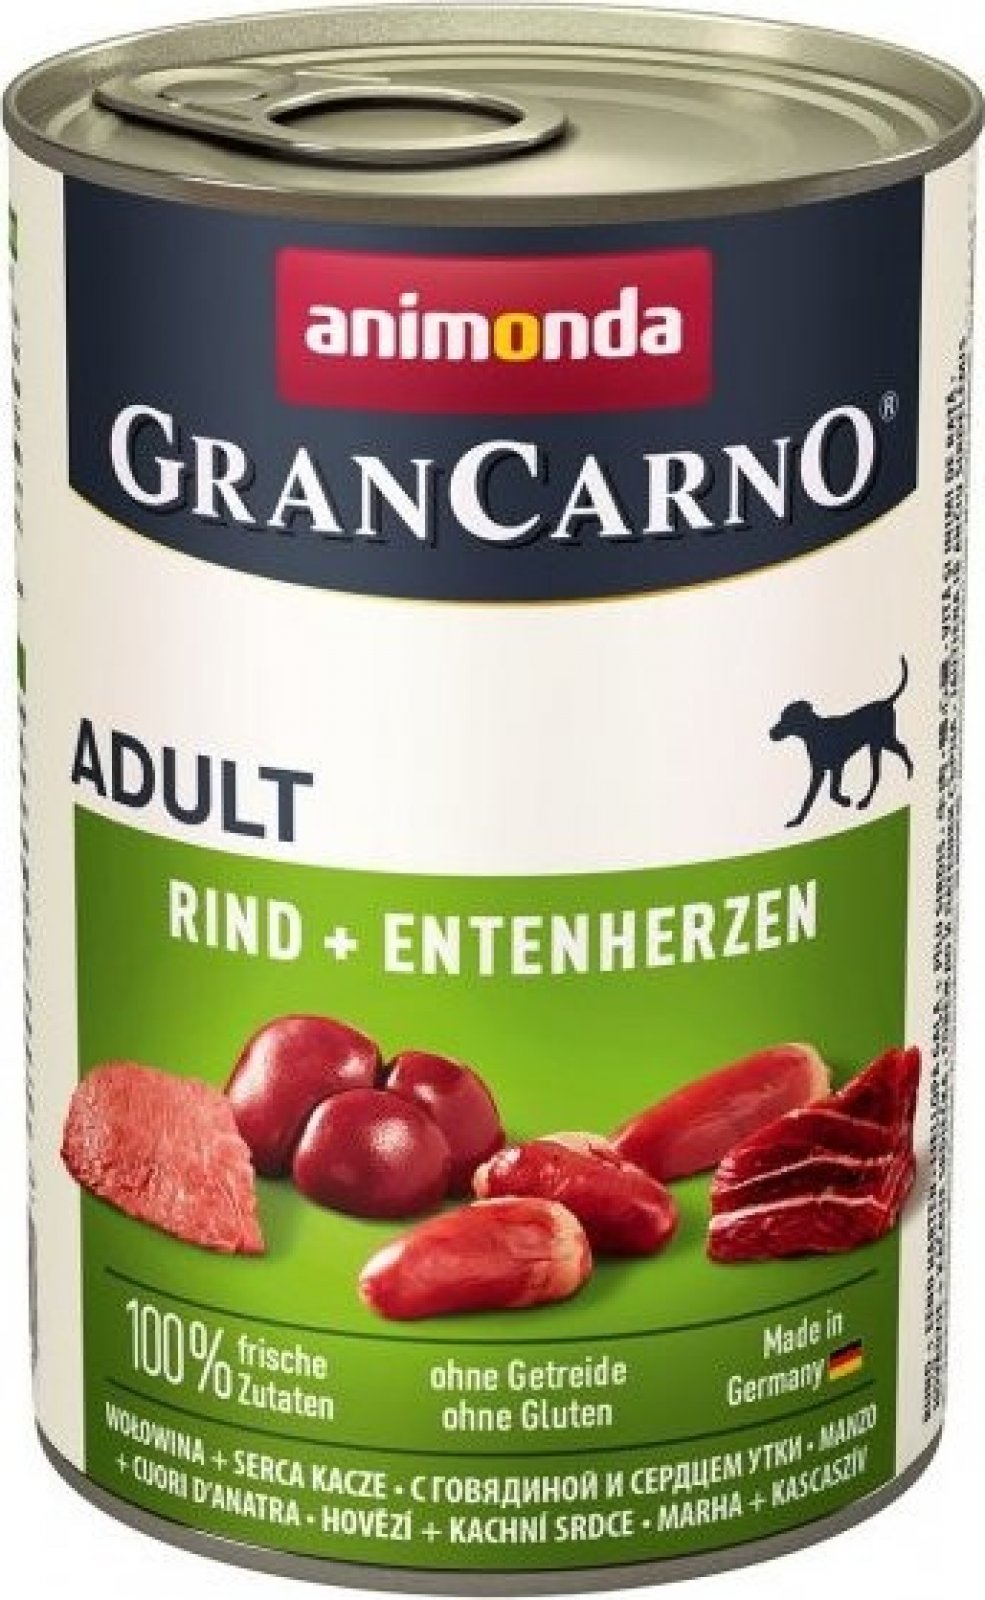 Animonda Gran Carno Adult hovězí & kachní srdce 400g